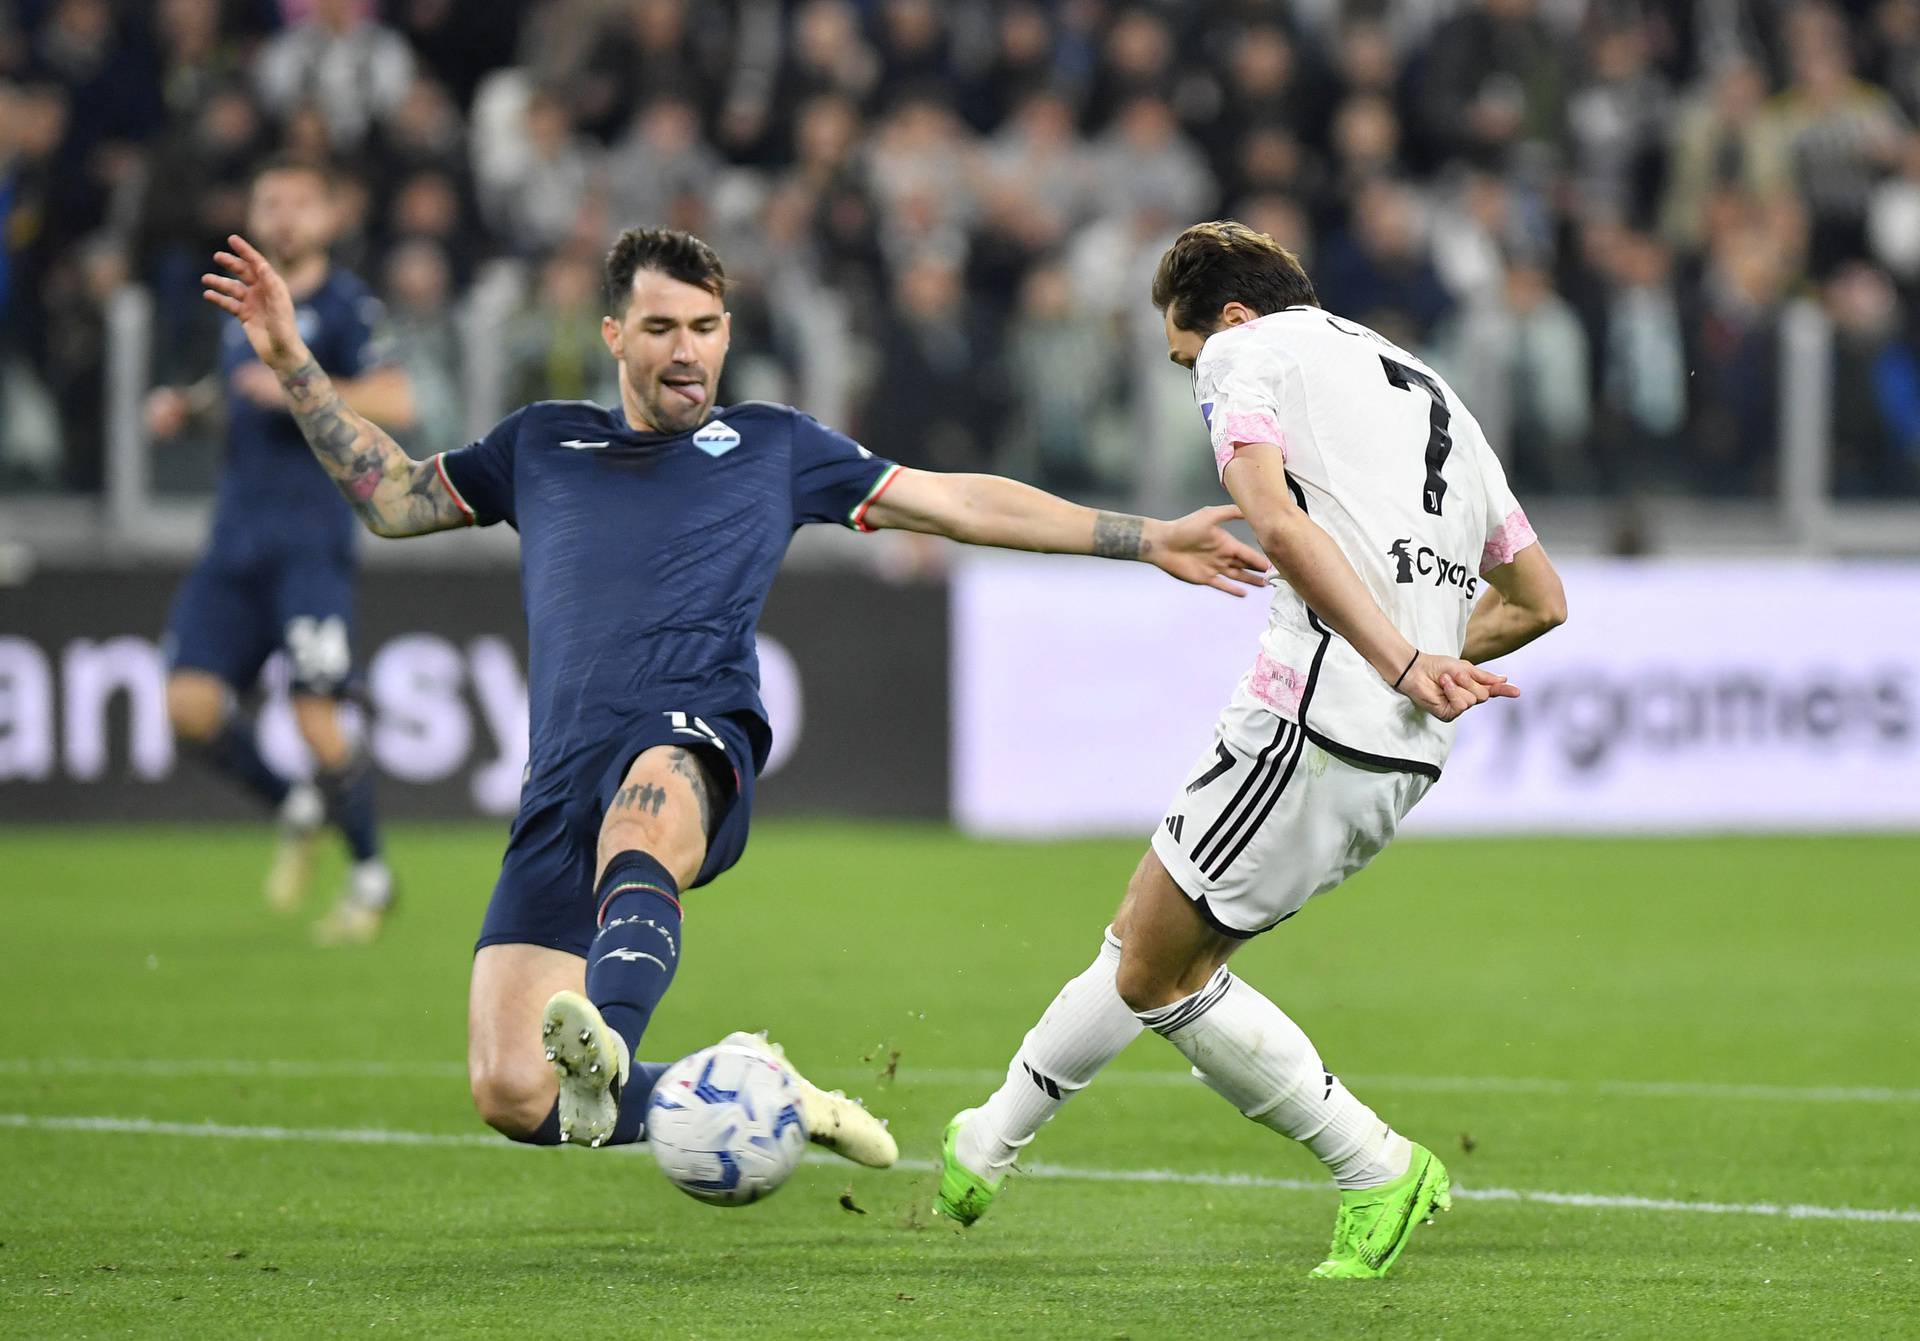 Coppa Italia - Semi Final - First Leg - Juventus v Lazio